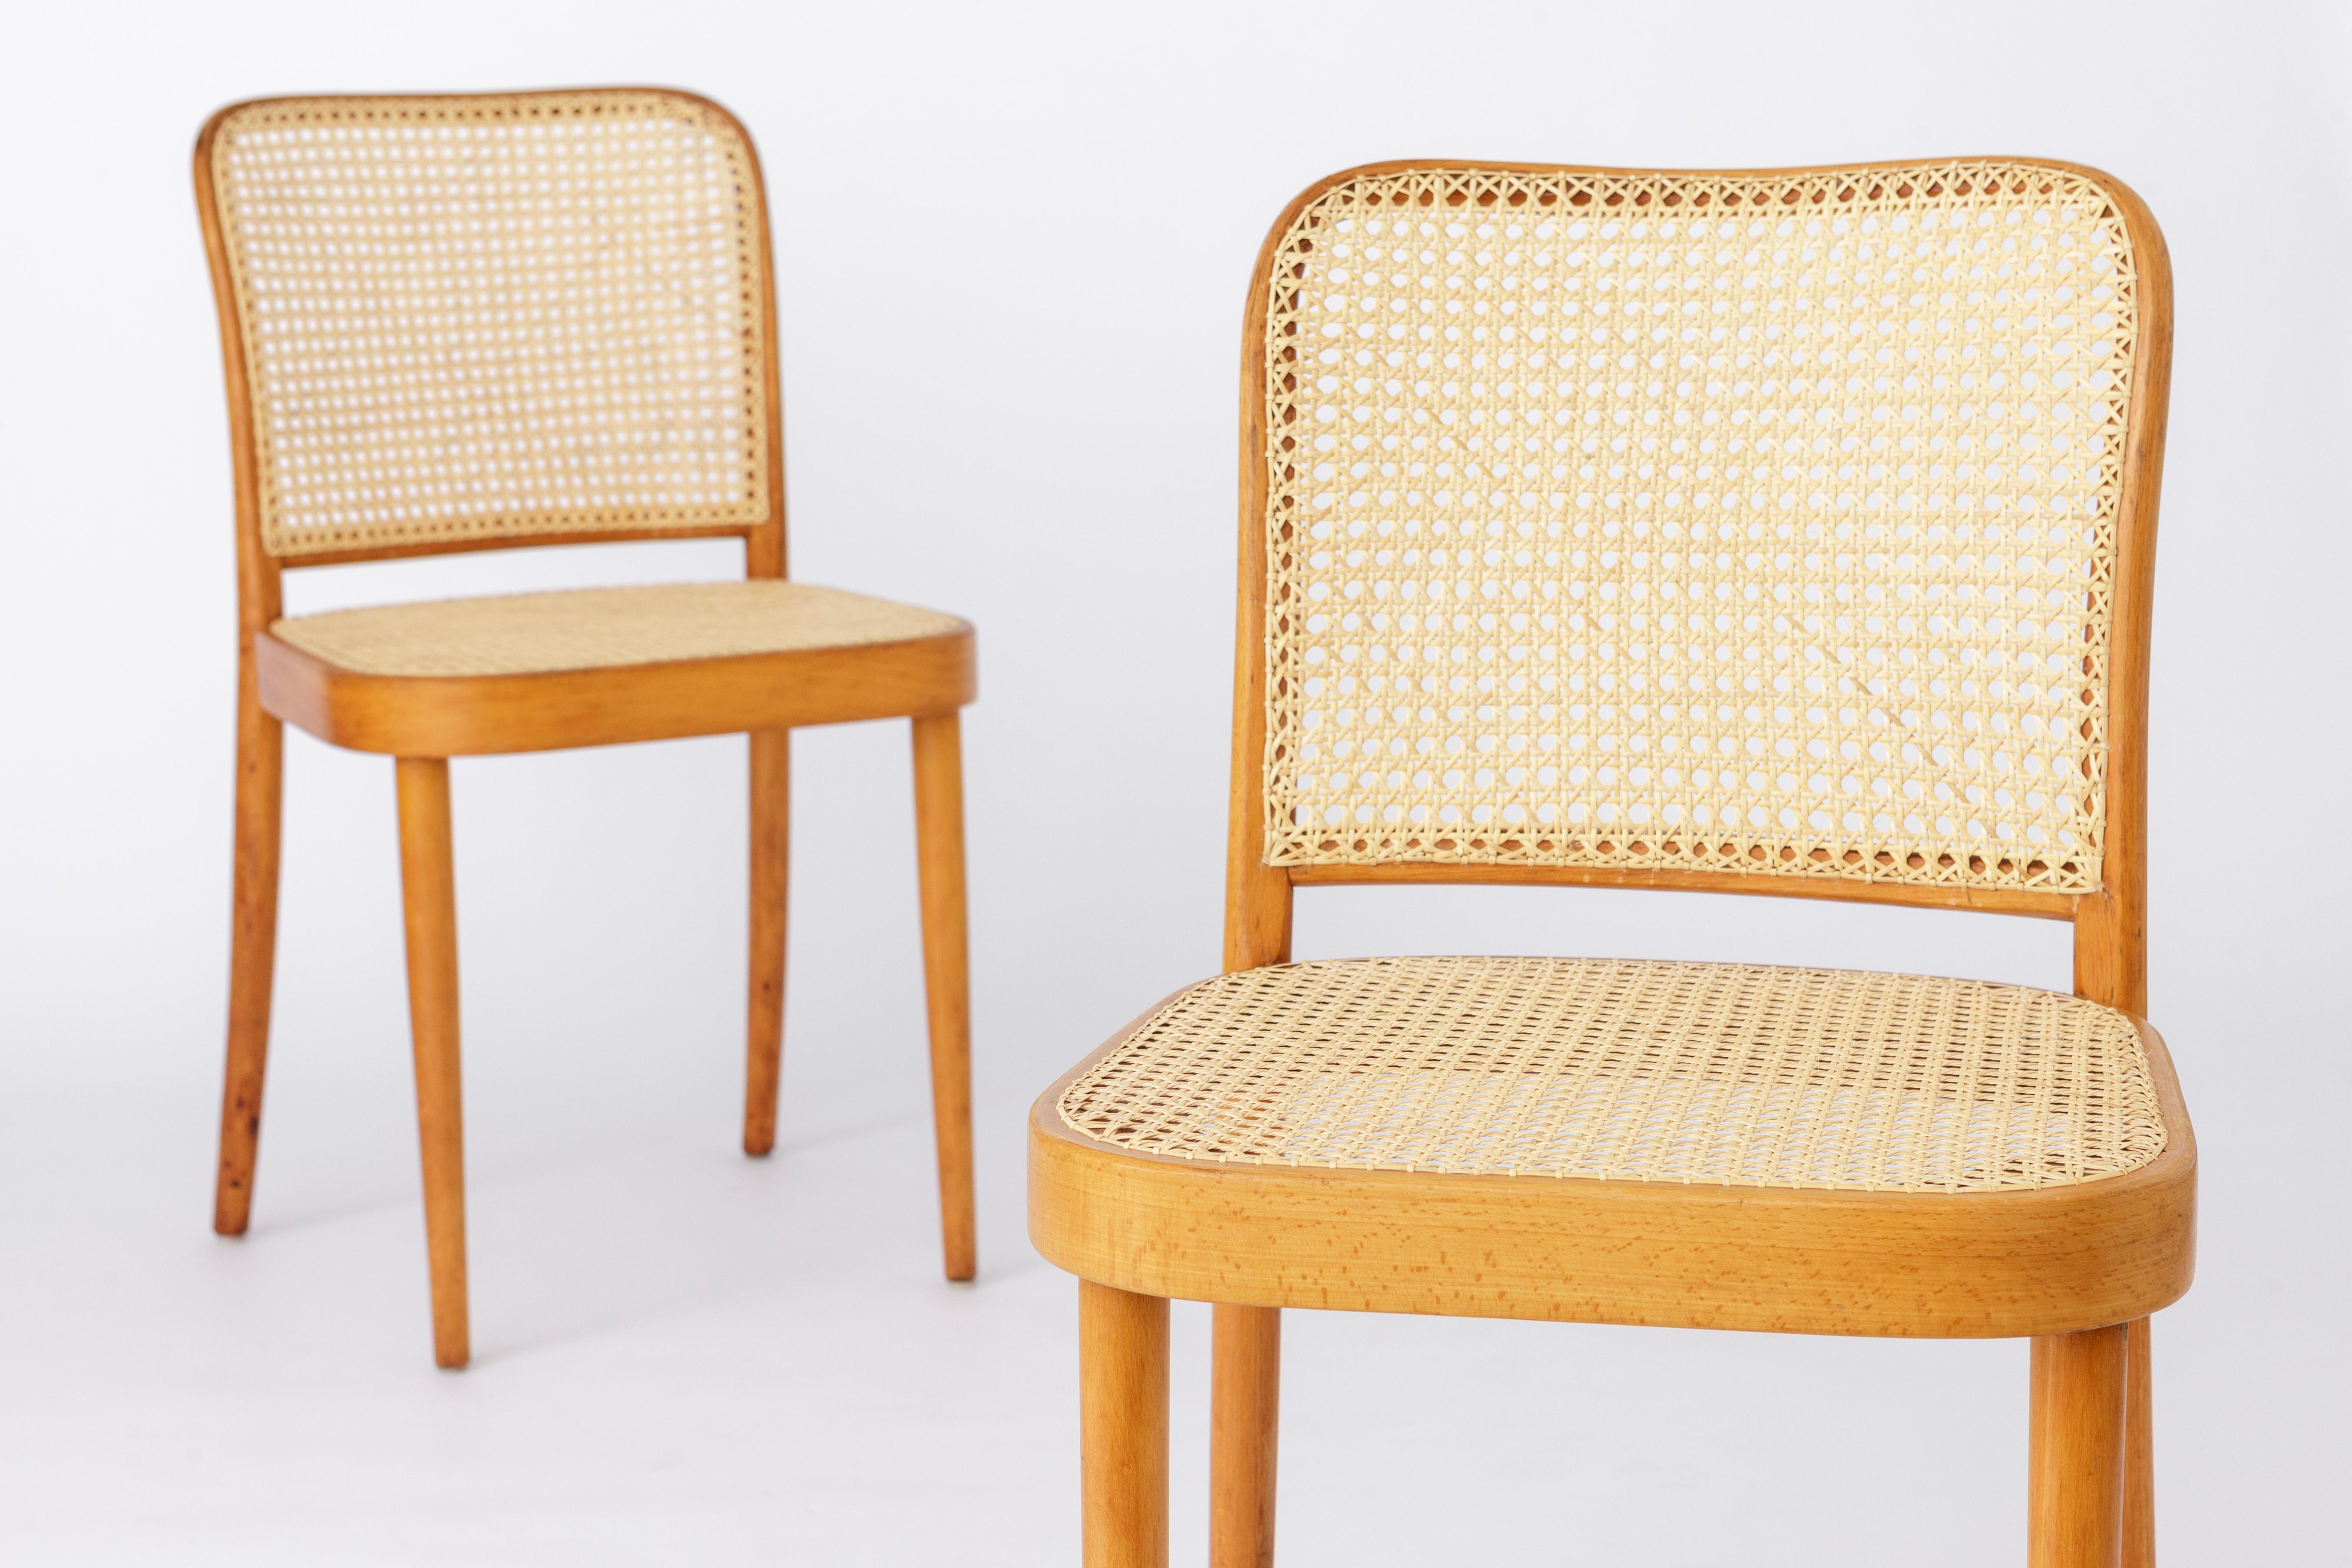 Paar Bugholzstühle aus der Tschechoslowakei vom Hersteller Ligna. 
Produktionszeitraum: 1960er-1970er Jahre. 
Der angezeigte Preis gilt für ein 2er-Set. Insgesamt sind bis zu 8 Stühle (4 Paare) erhältlich. 

Stabiler Rahmen aus Buchenholz.